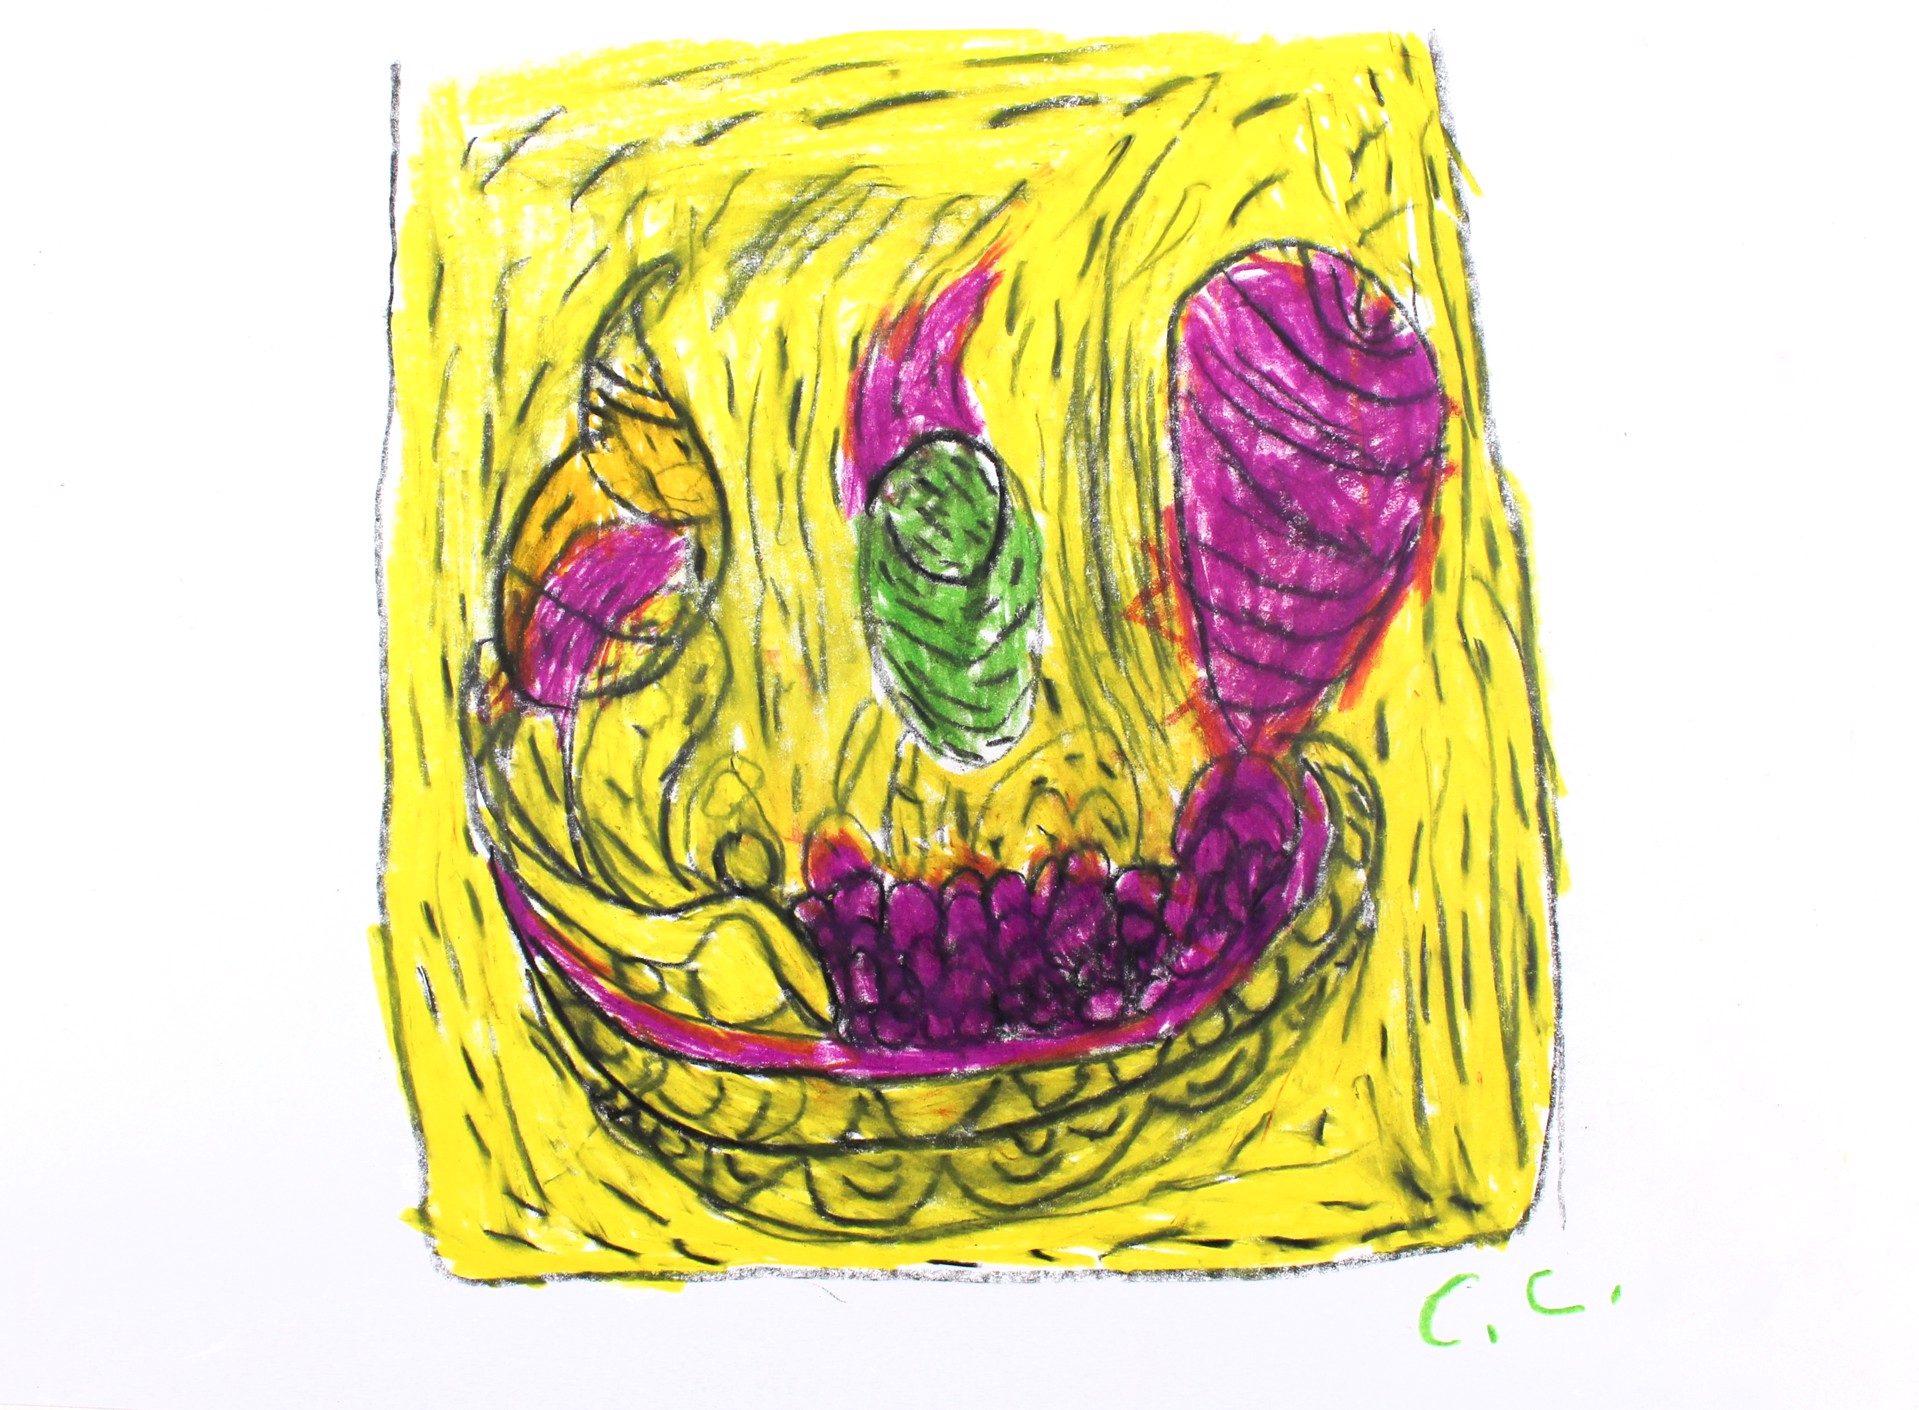 Fruit Bowl by Calvin "Sonny" Clarke